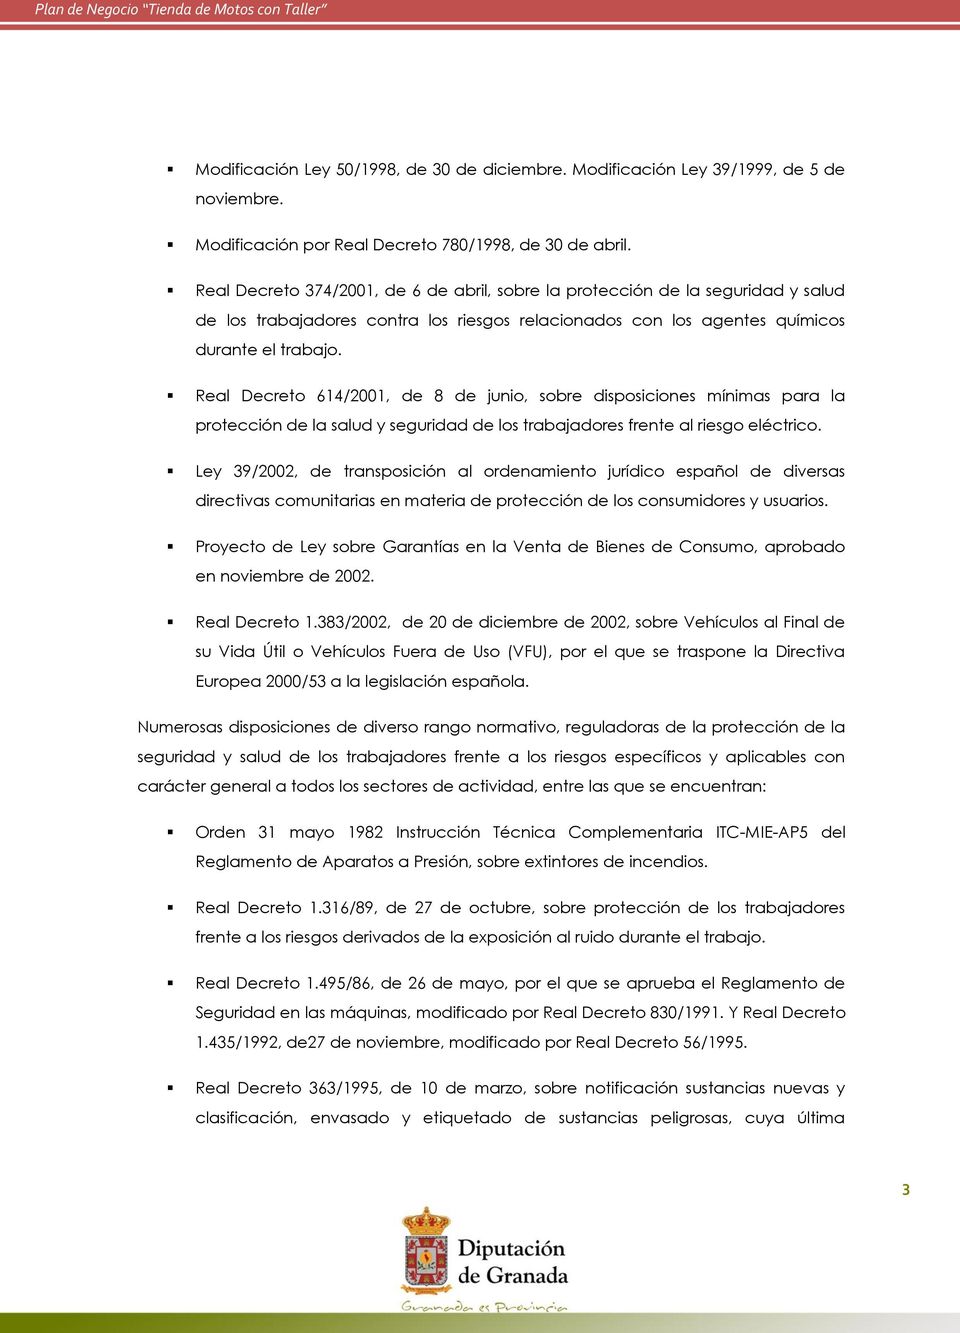 Real Decreto 614/2001, de 8 de junio, sobre disposiciones mínimas para la protección de la salud y seguridad de los trabajadores frente al riesgo eléctrico.